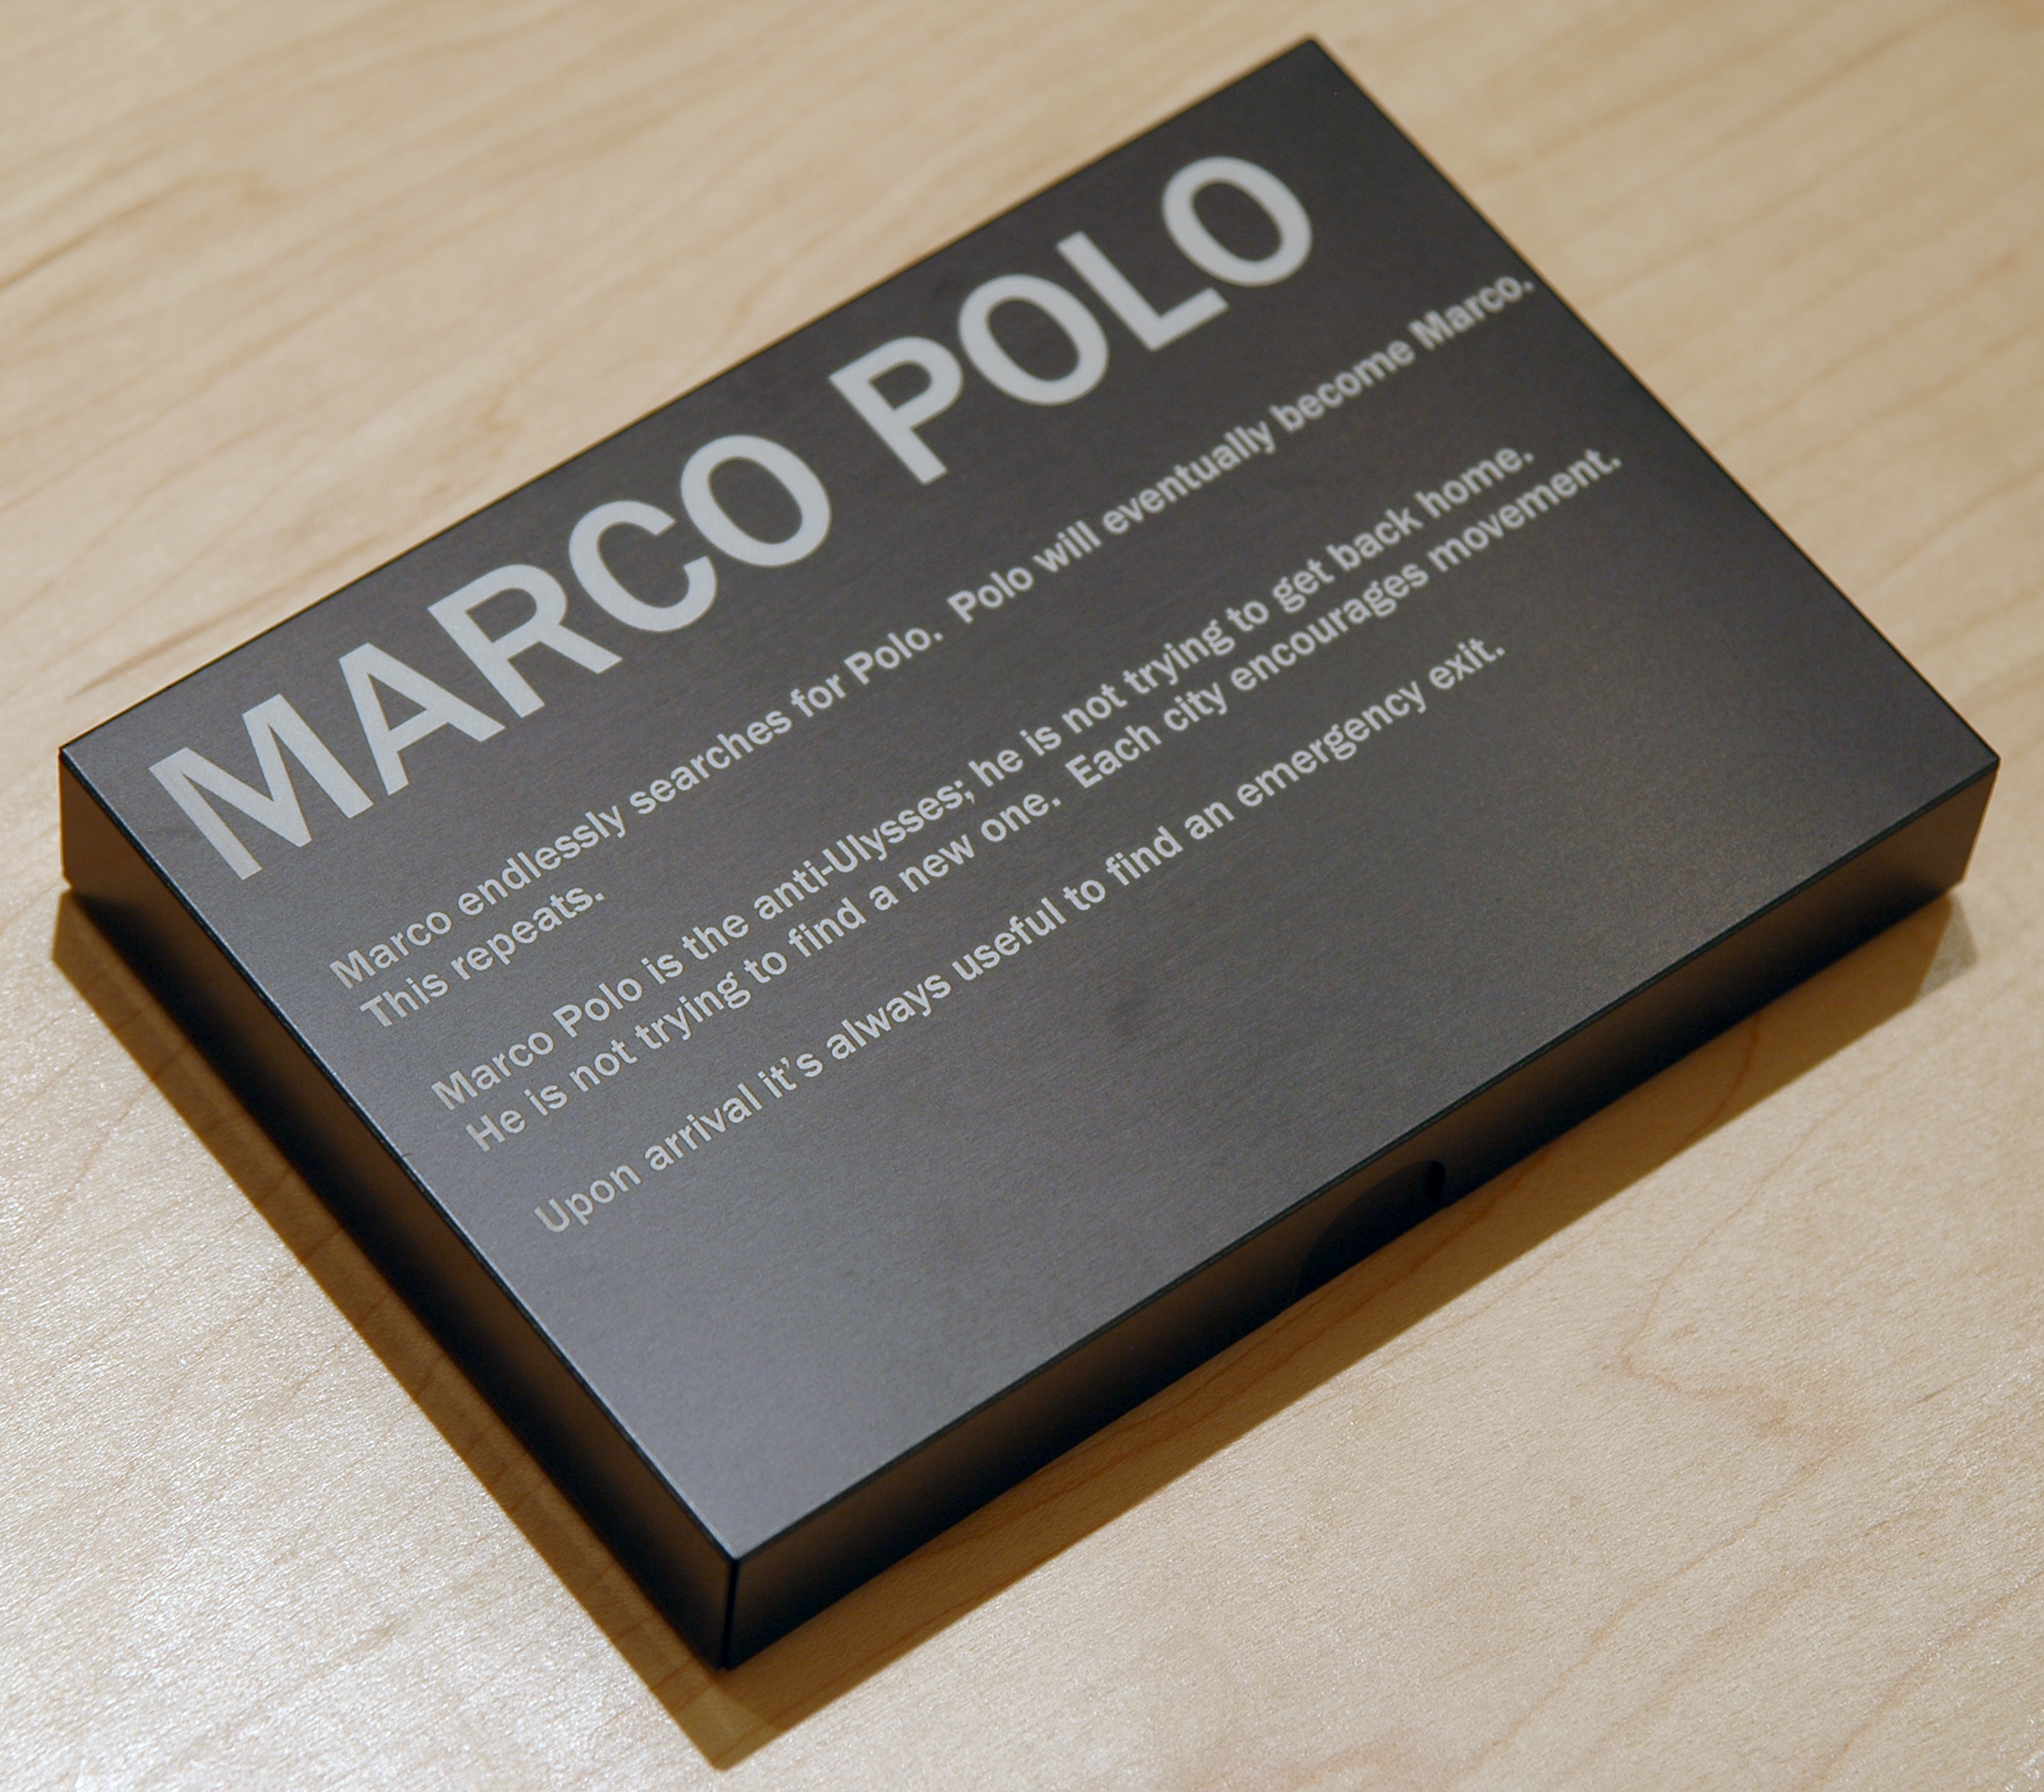   PABLO GUARDIOLA   Marco Polo  [closed], collage and plexiglass in aluminum portfolio, 4.75" W x 6.75" L x 1" H, edition of 10,2011 